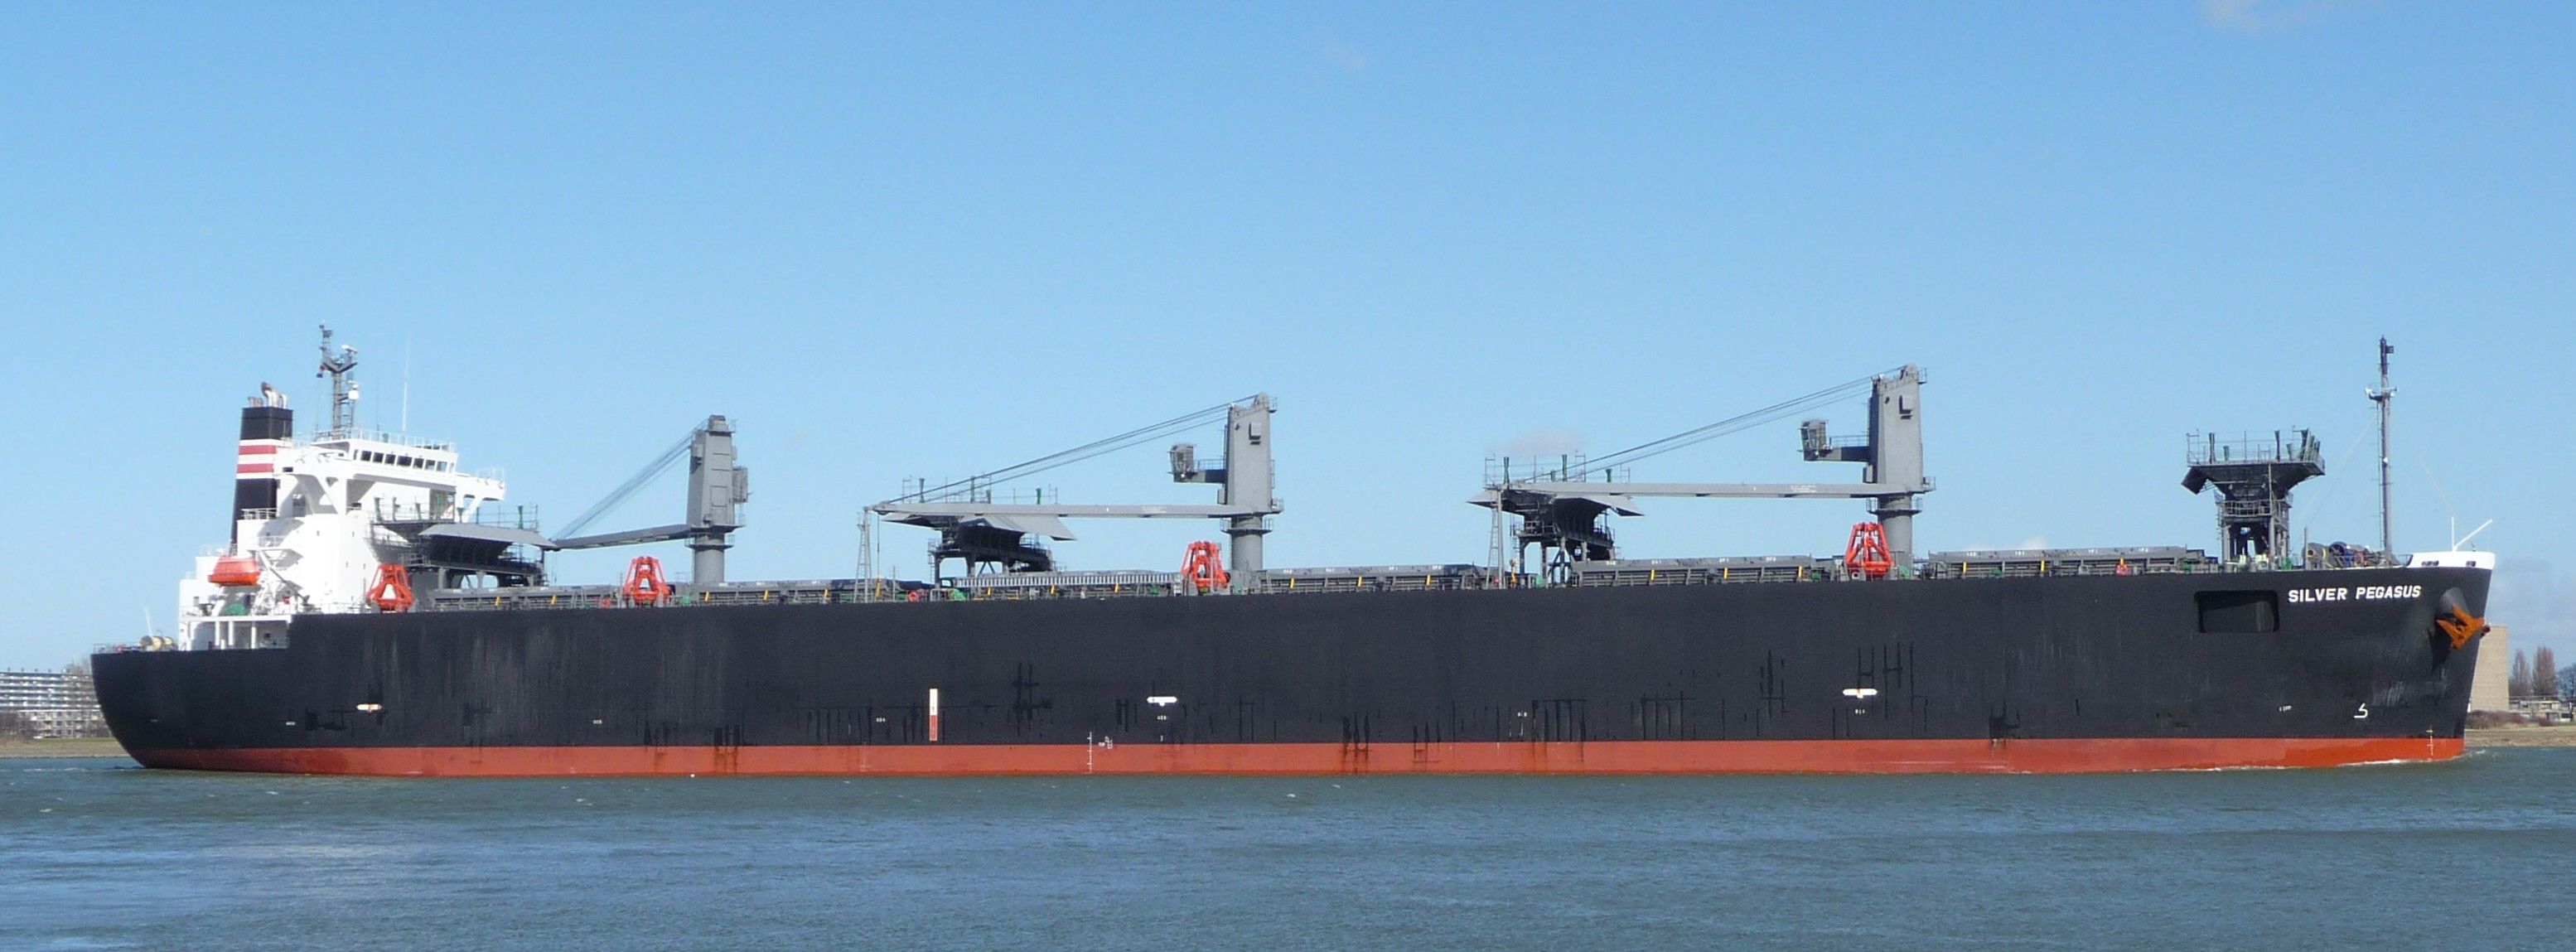 bulk carrier SILVER PEGASUSkomt in de europort binnen